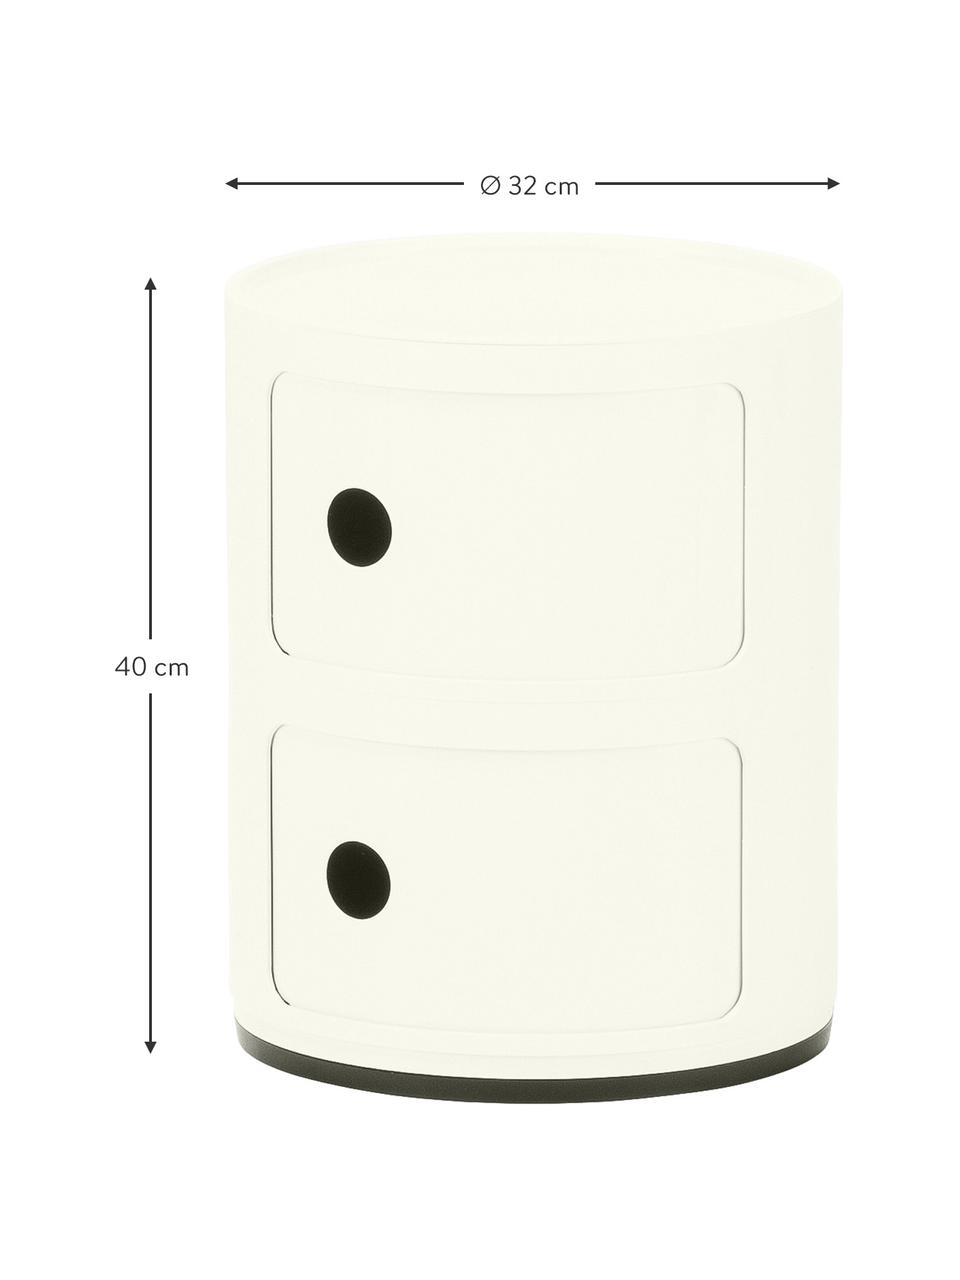 Table d'appoint design 3 compartiments, blanc crème Componibili, Plastique (ABS), laqué, certifié Greenguard, Blanc crème, Ø 32 x haut. 40 cm